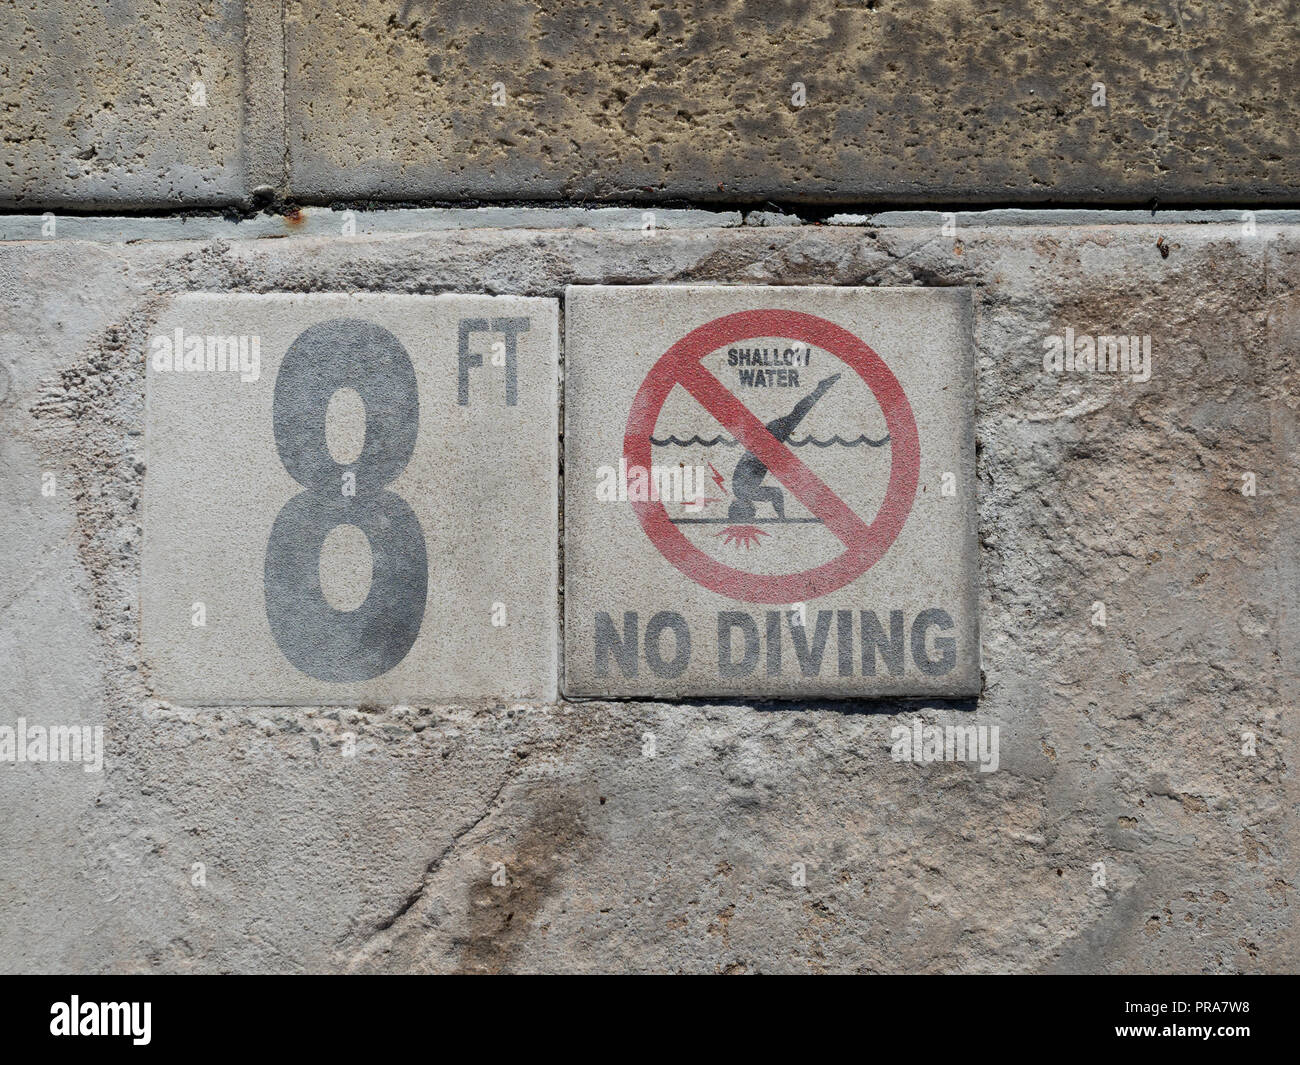 8 pieds, l'eau peu profonde, pas de signe de plongée au pied de la piscine Banque D'Images